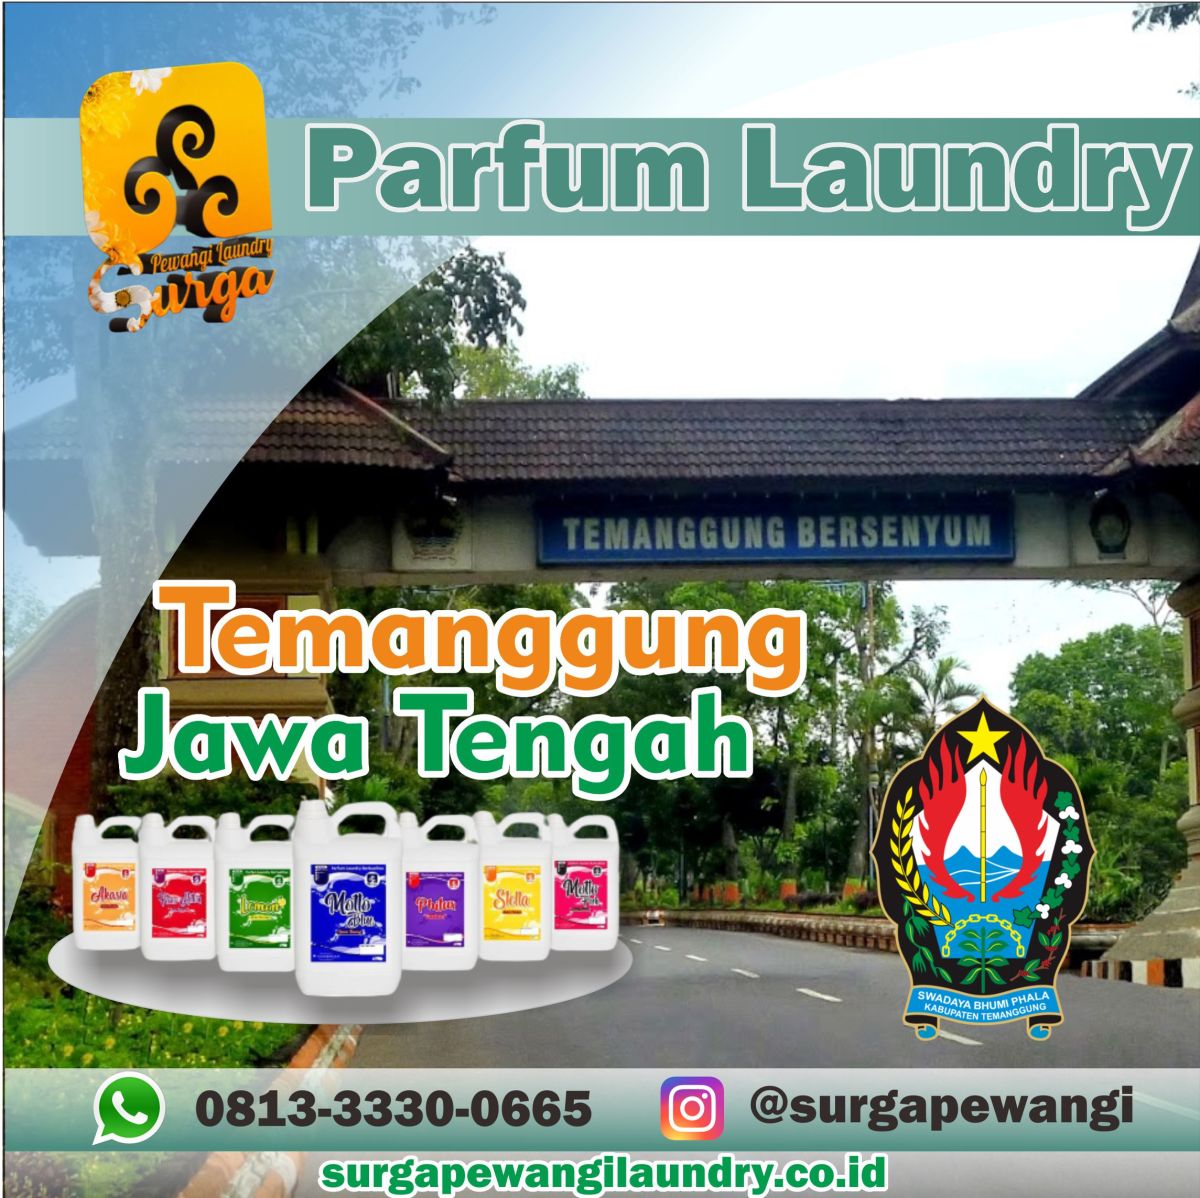 Parfum Laundry Kabupaten Temanggung, Jawa Tengah, Jawa Tengah